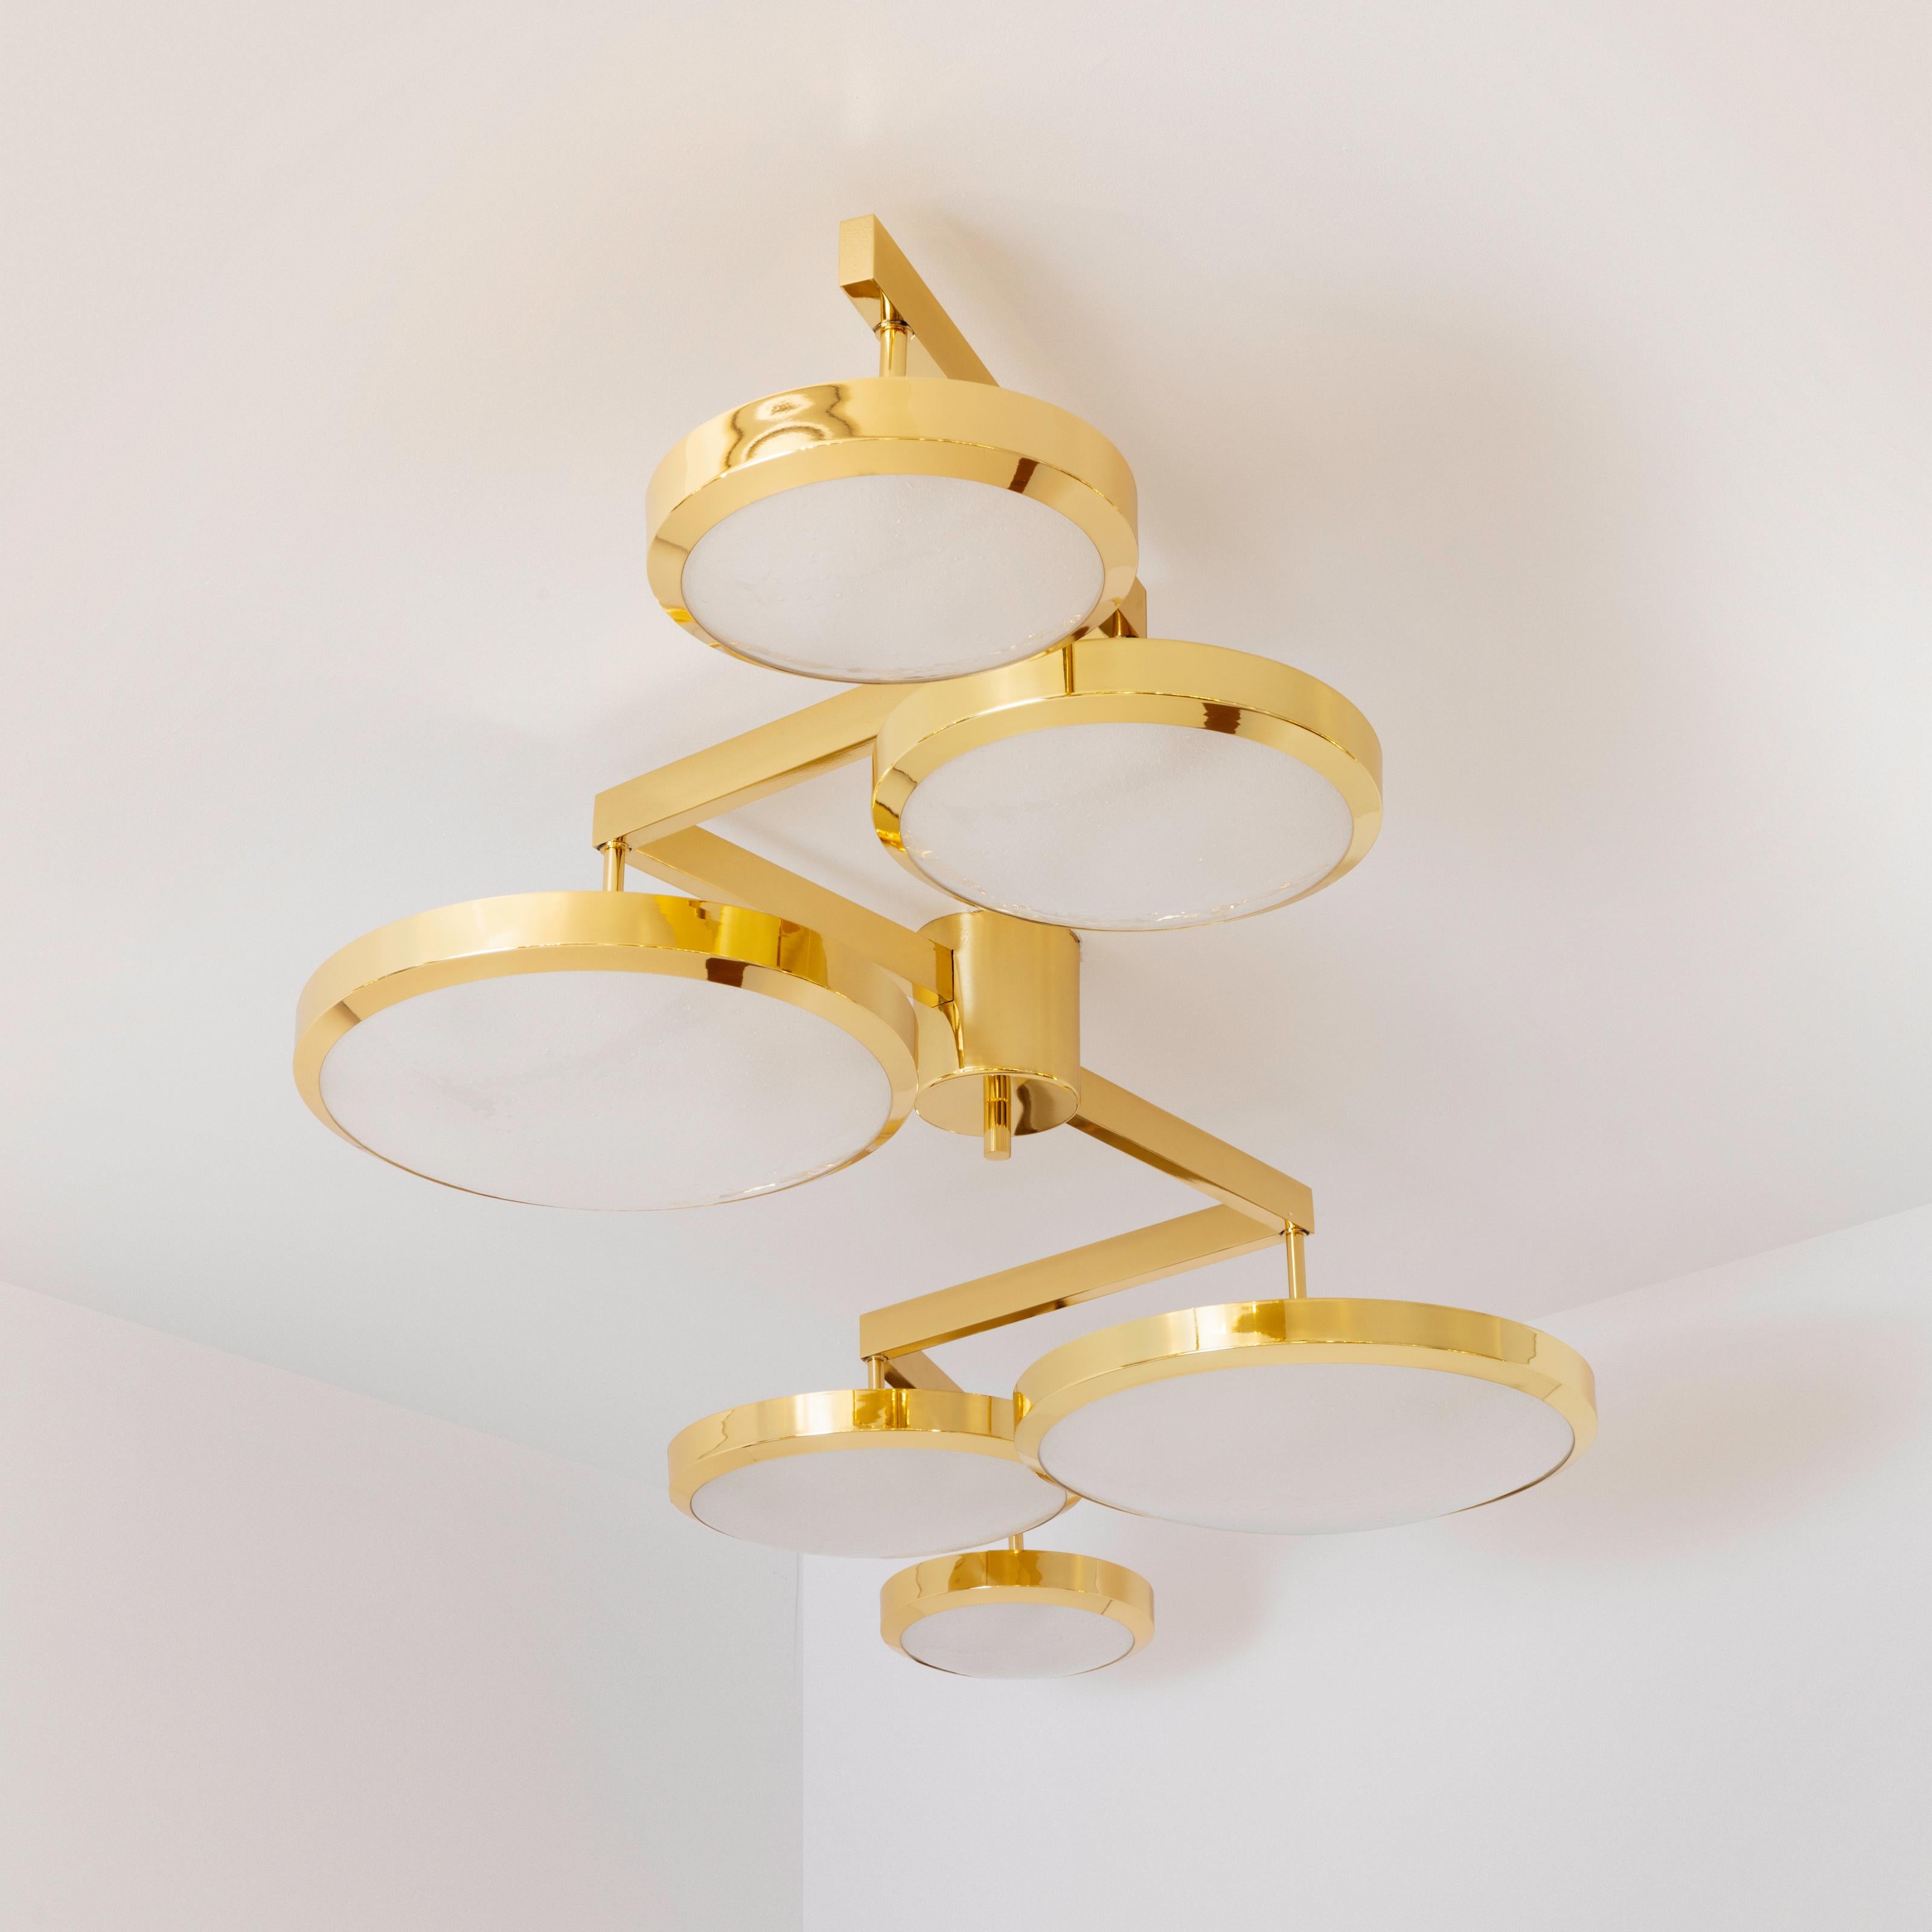 Italian Geometria Sospesa Ceiling Light by Gaspare Asaro-Brunito Nero Finish For Sale